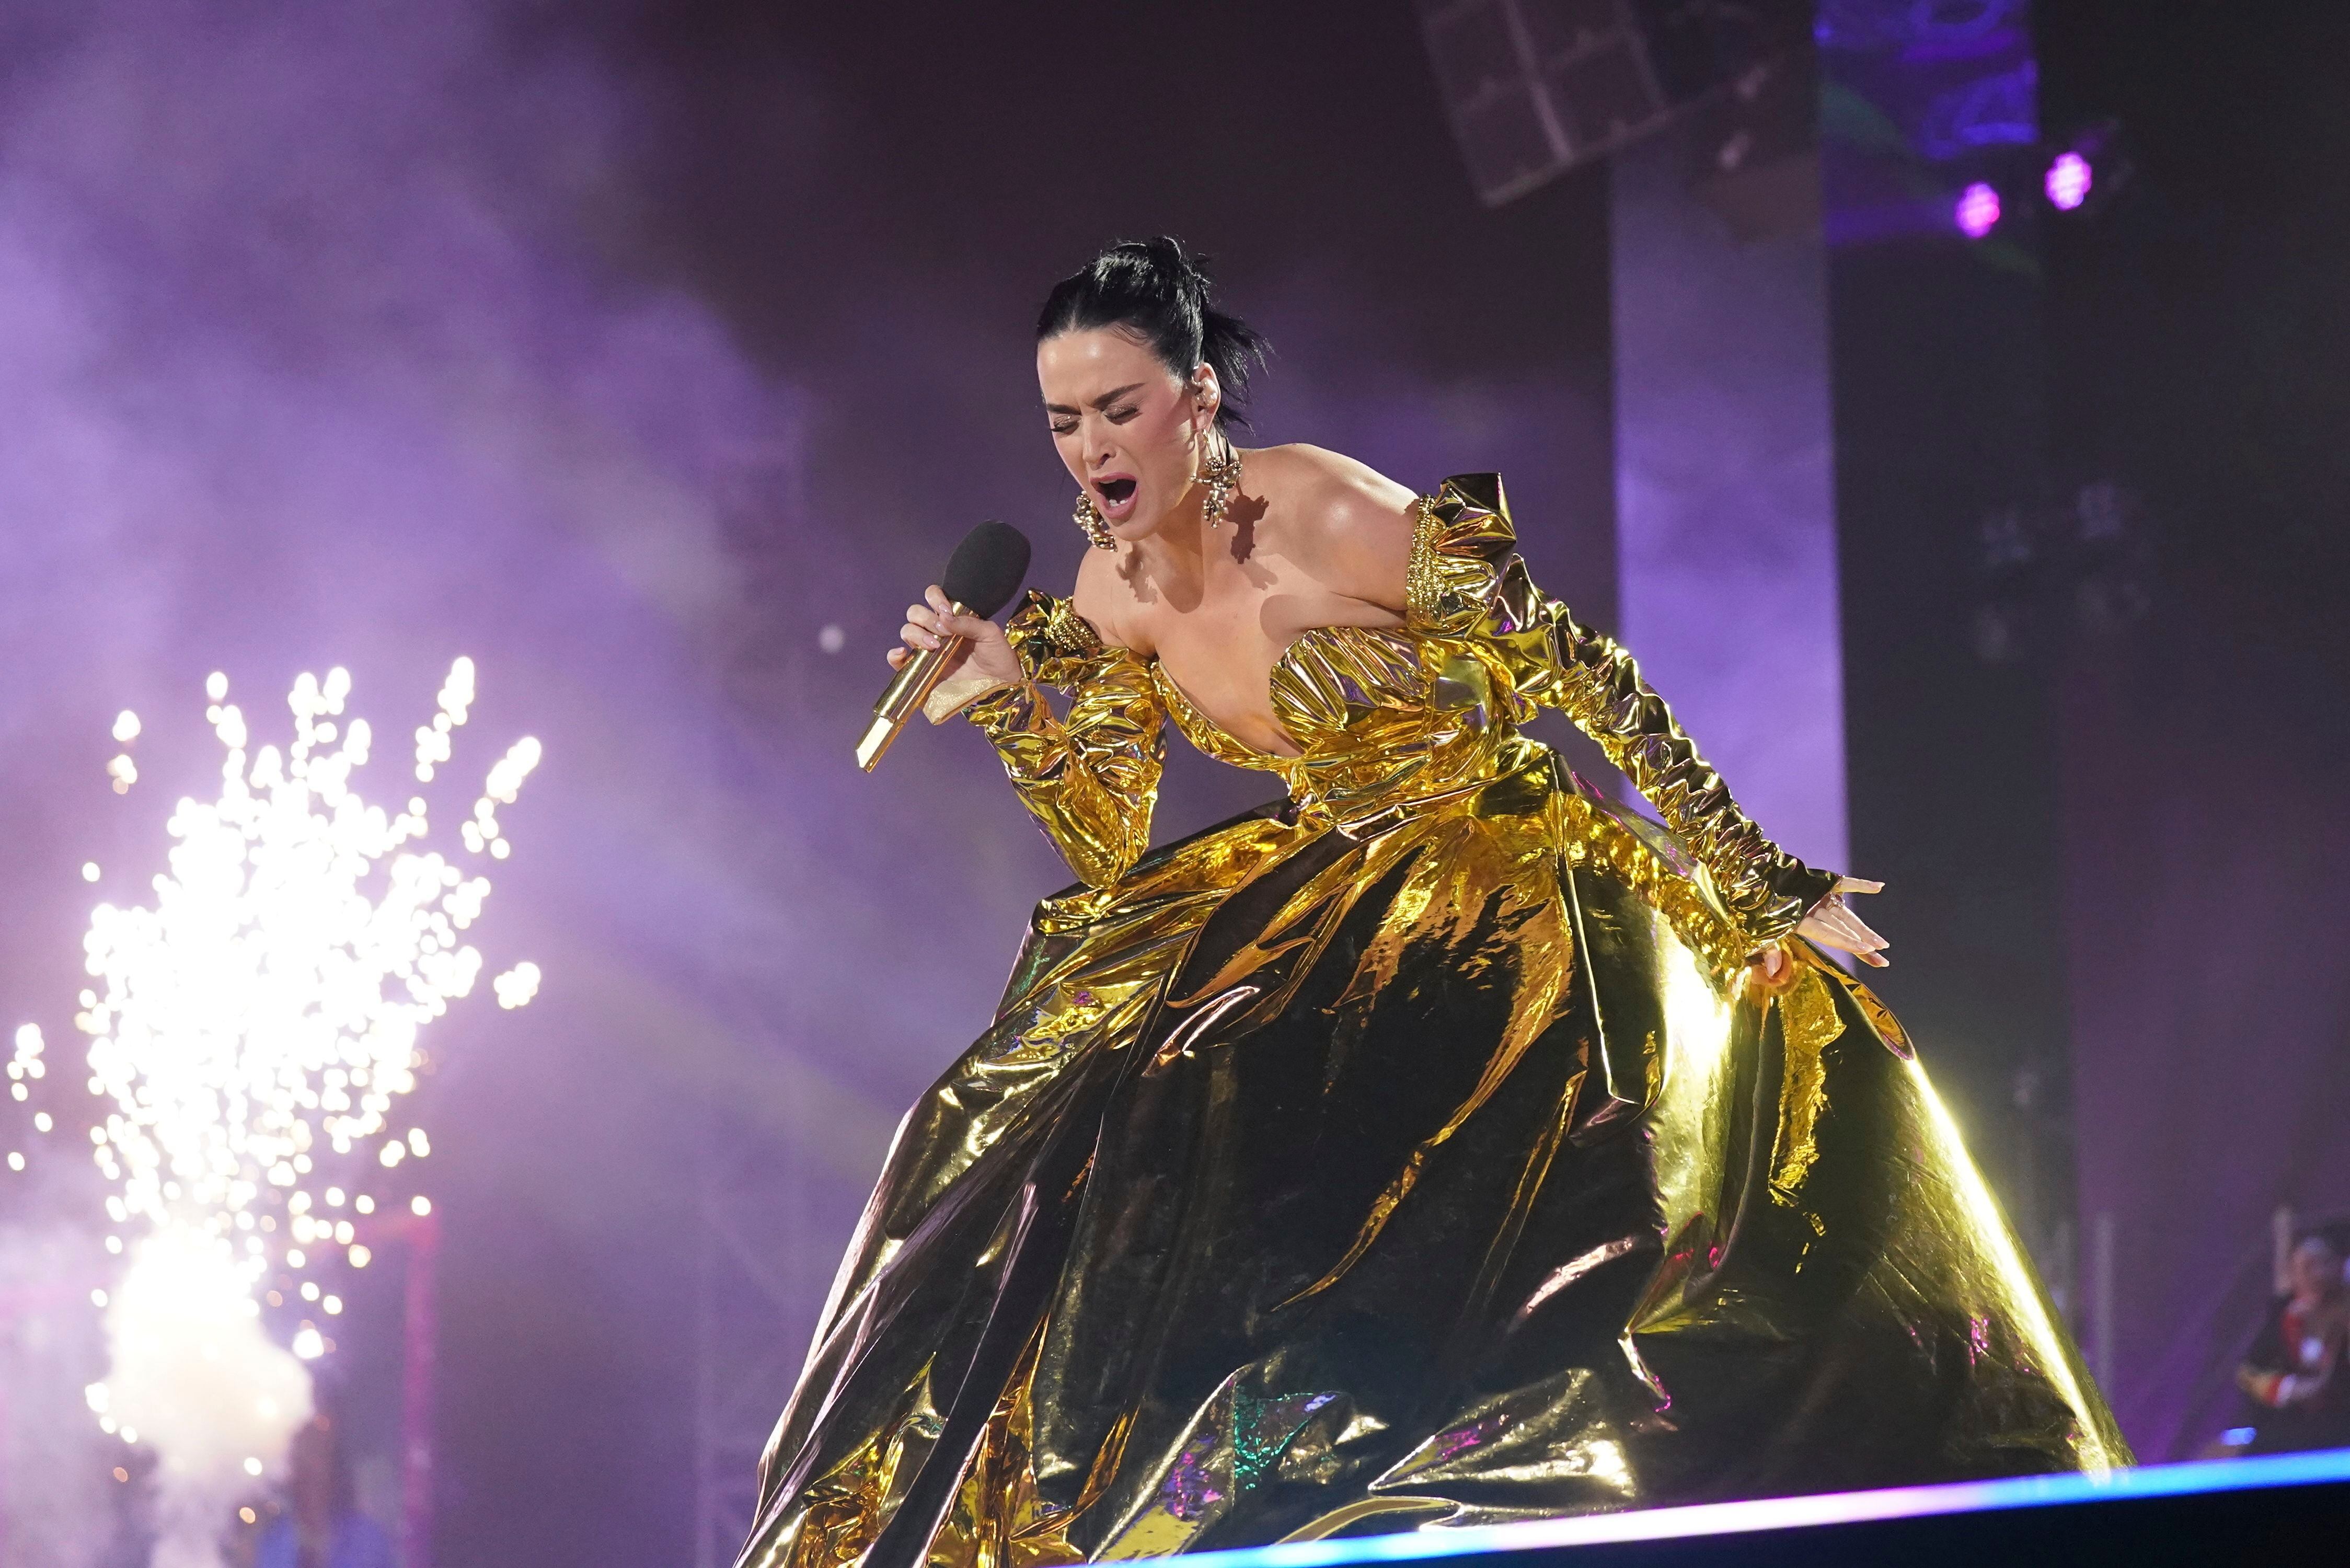 La estadounidense Katy Perry canta en el concierto en el castillo de Windsor con motivo de la coronación de Carlos III de Inglaterra, el 7 de mayo de 2023.